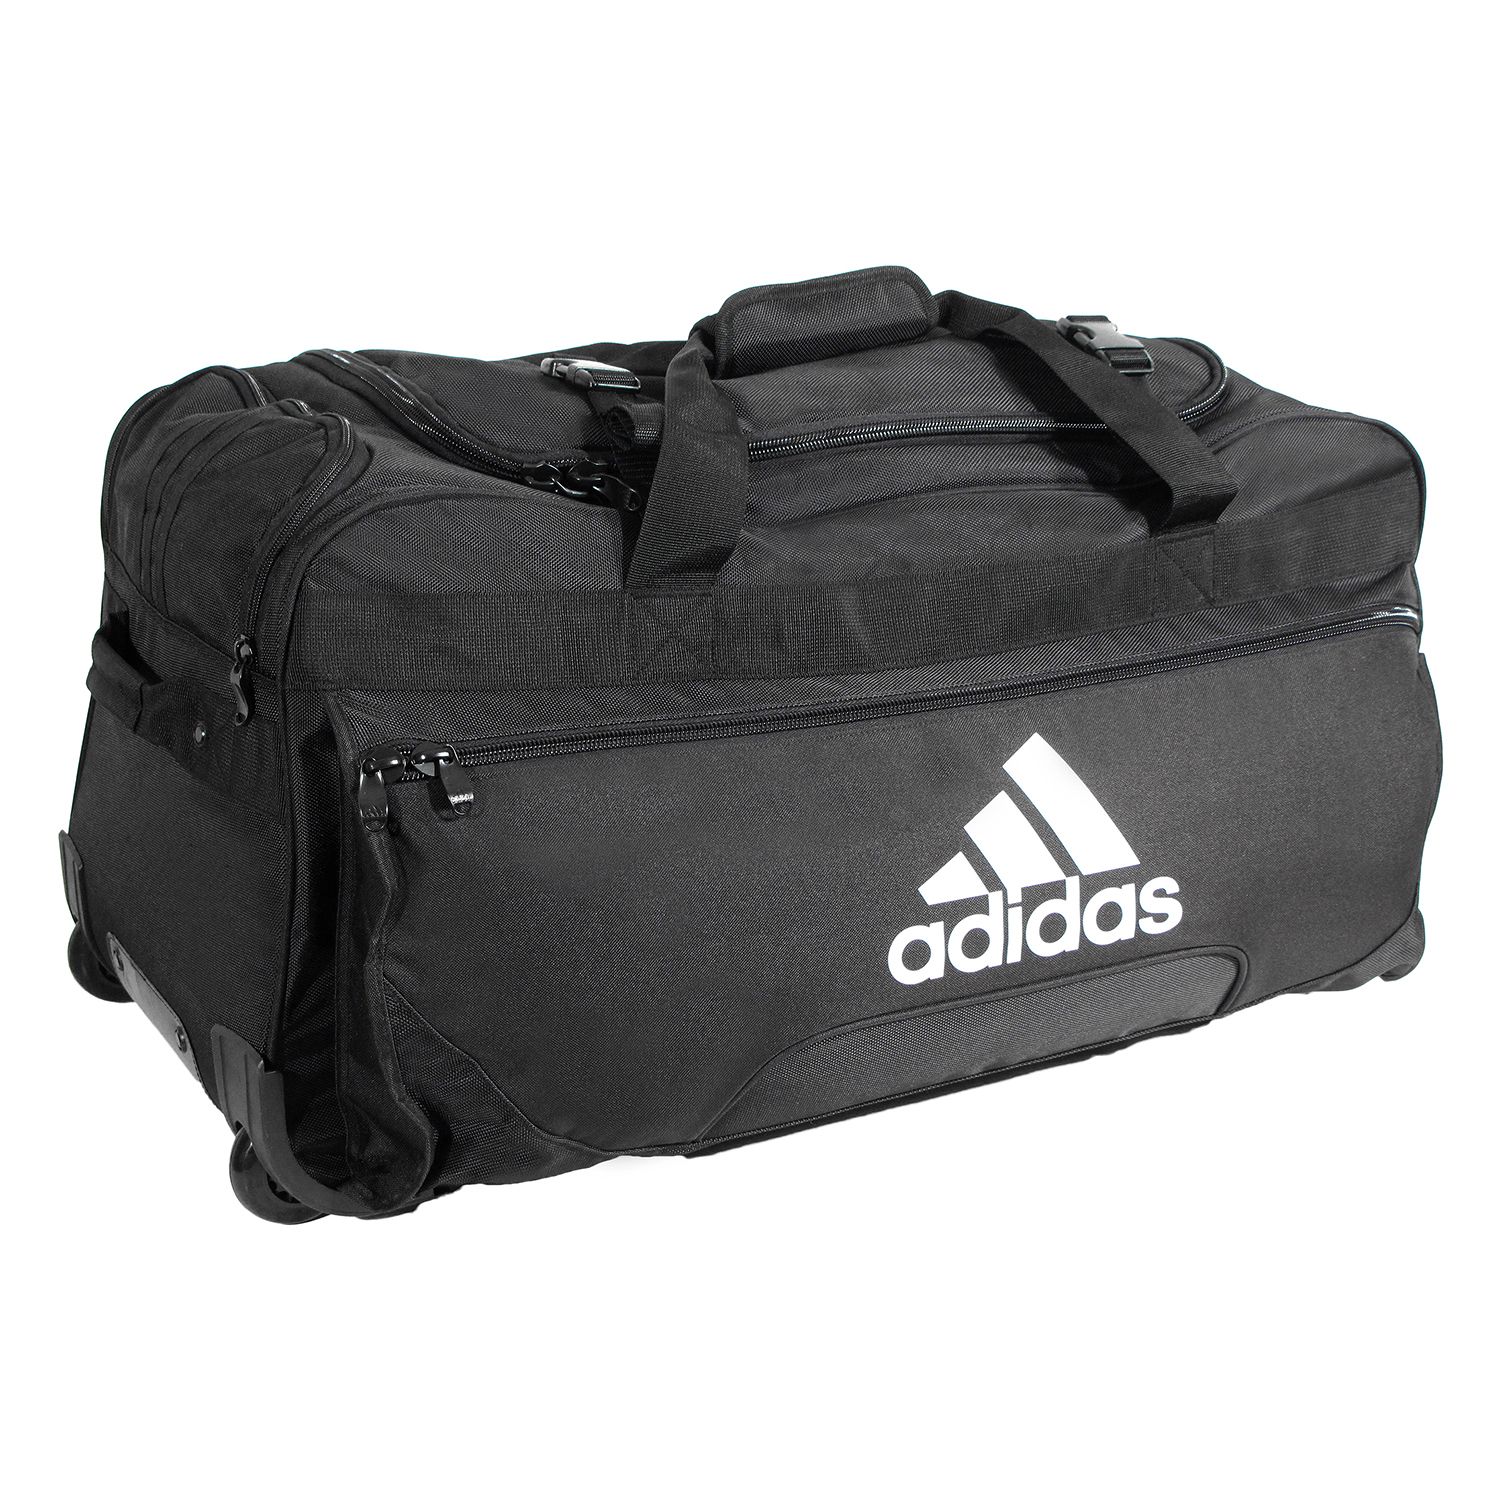 adidas Team Wheeled Duffel Bag